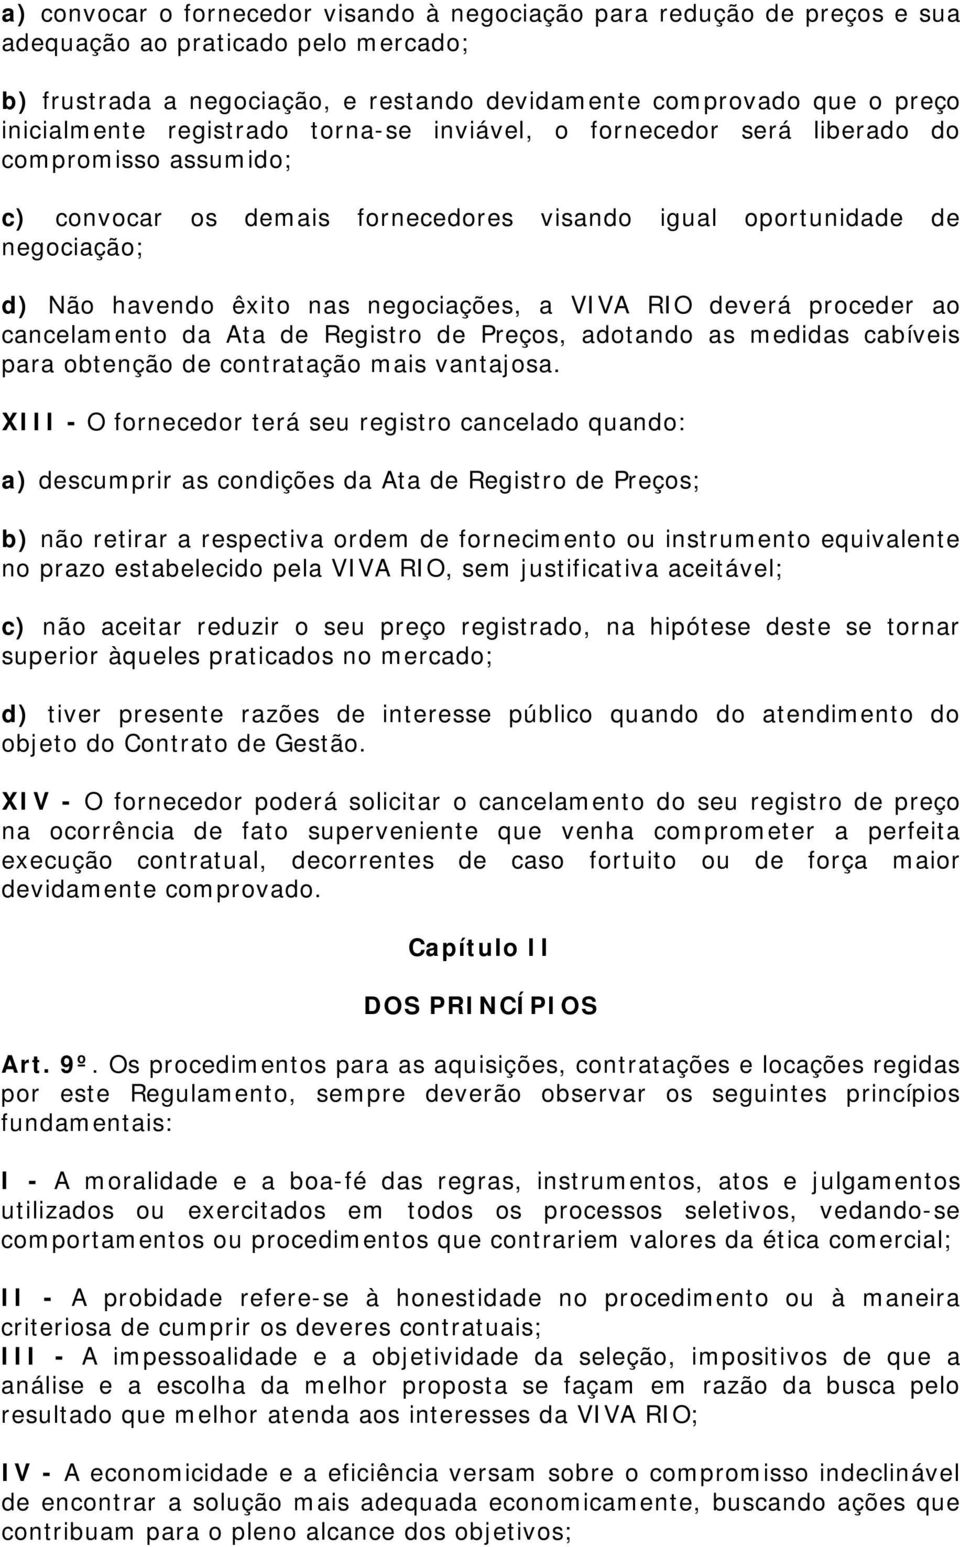 VIVA RIO deverá proceder ao cancelamento da Ata de Registro de Preços, adotando as medidas cabíveis para obtenção de contratação mais vantajosa.